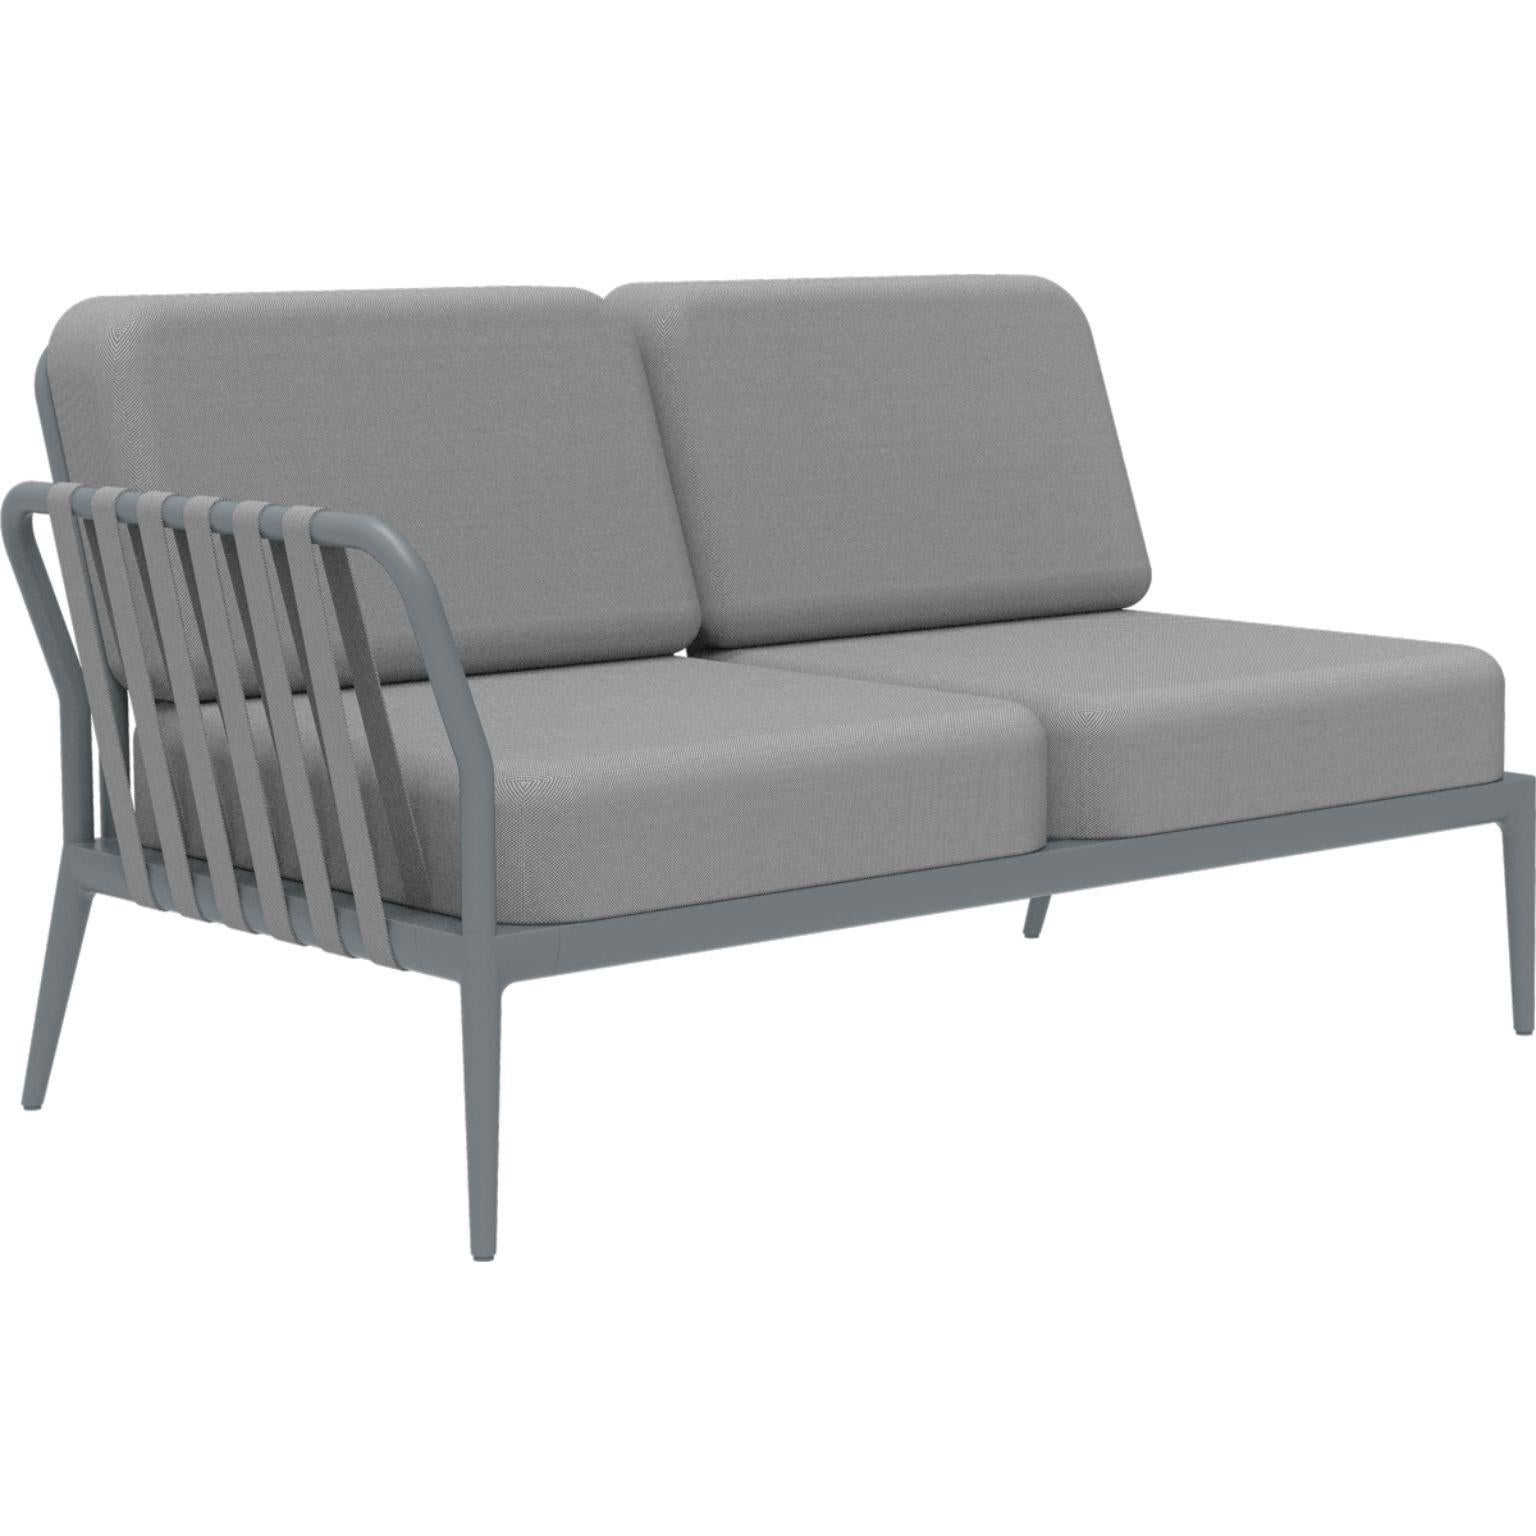 Ribbons Grau Doppeltes rechtes modulares sofa von MOWEE
Abmessungen: T83 x B148 x H81 cm (Sitzhöhe 42 cm).
MATERIAL: Aluminium und Polstermöbel.
Gewicht: 29 kg
Auch in verschiedenen Farben und Ausführungen erhältlich. 

Eine Collection'S, die durch